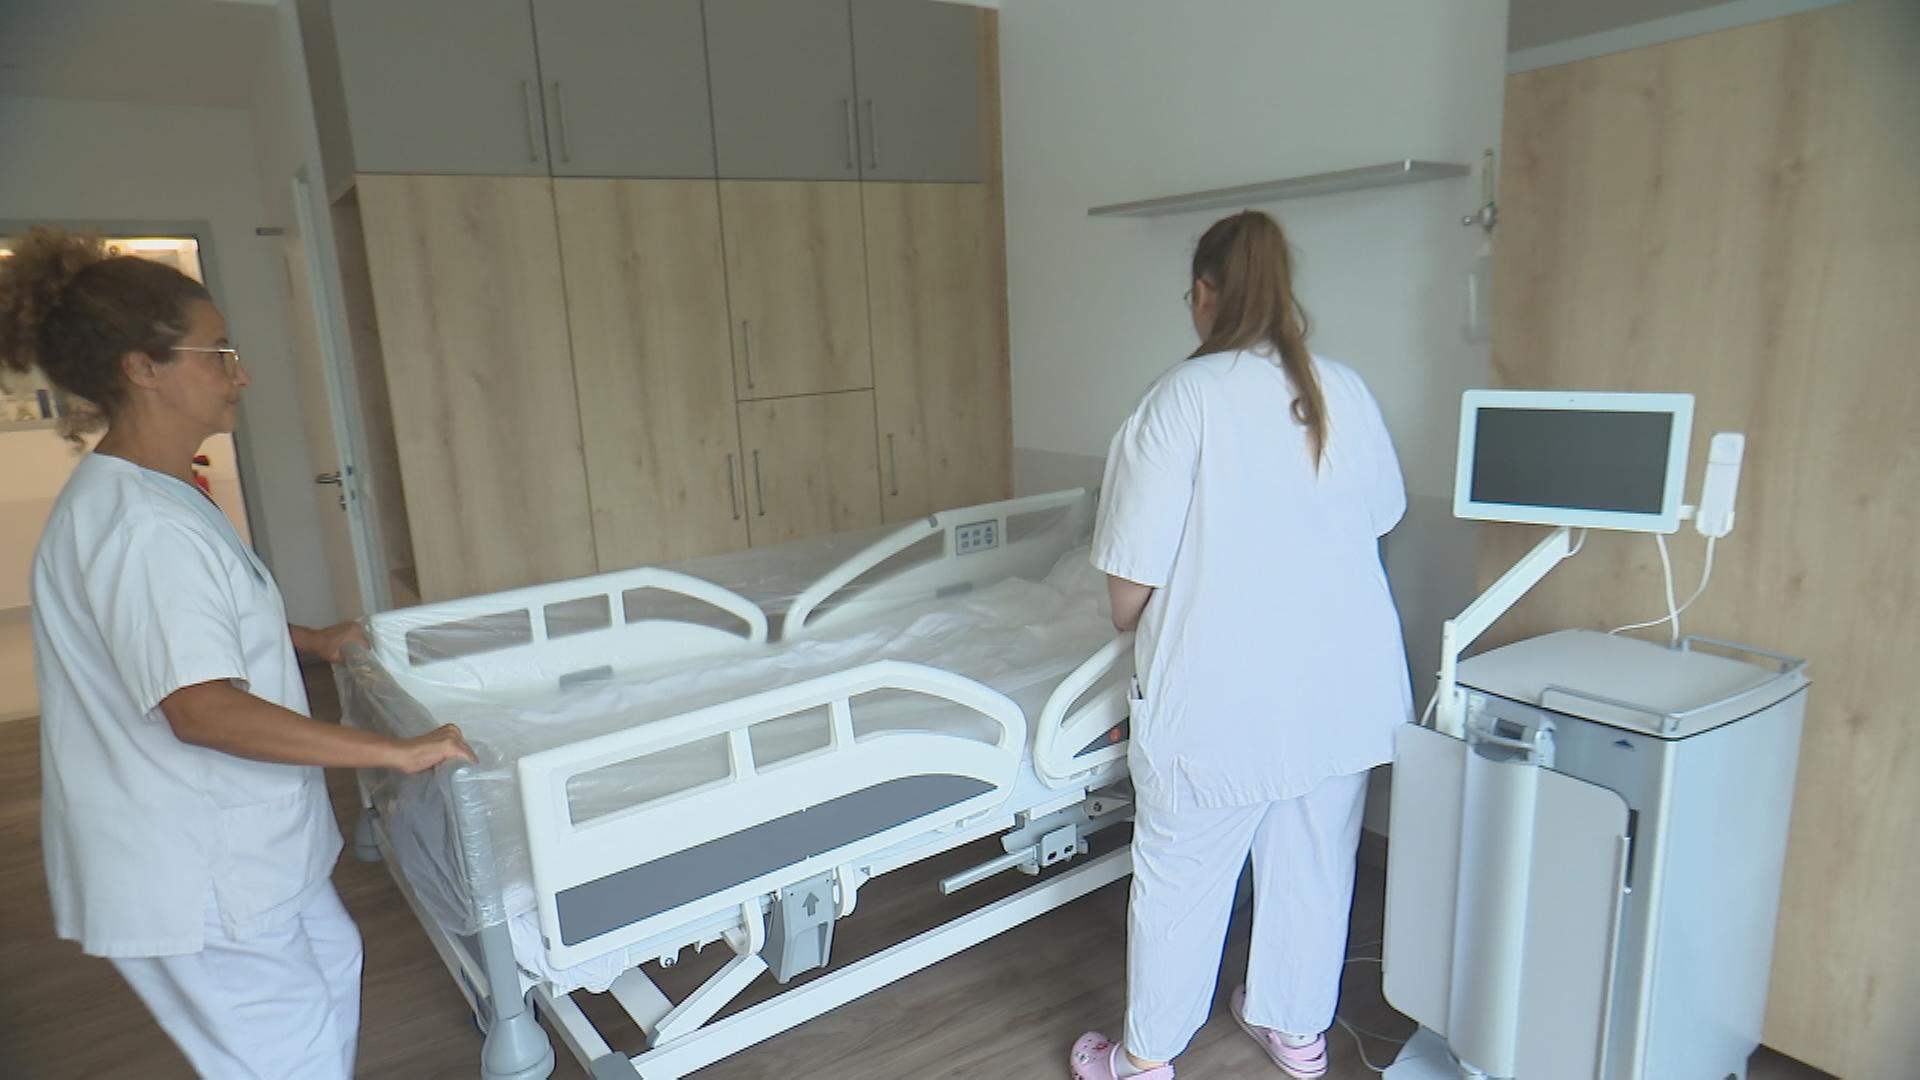 Auf dem Bild sind zwei Pflegerinnen zu sehen, die sich um ein Pflegebett kümmern.